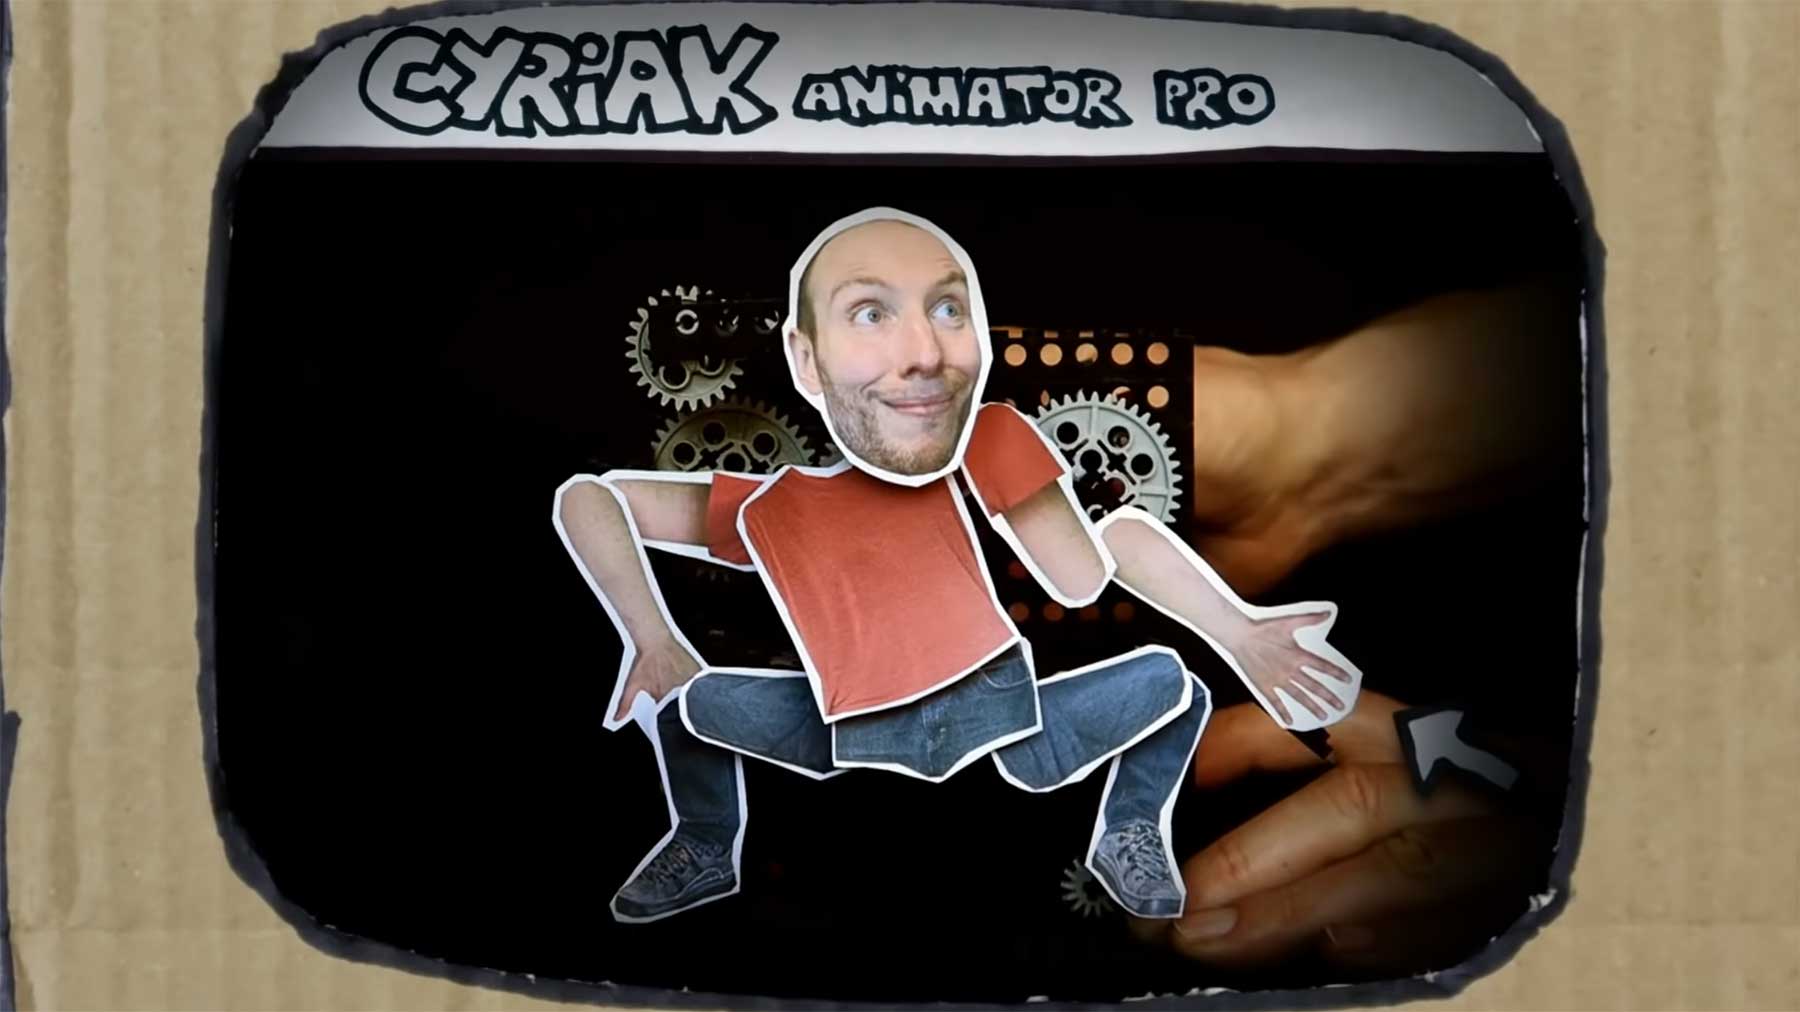 Cyriak hat eine eigene Animations-Software aus Pappe gemacht Cariak-animator-pro 